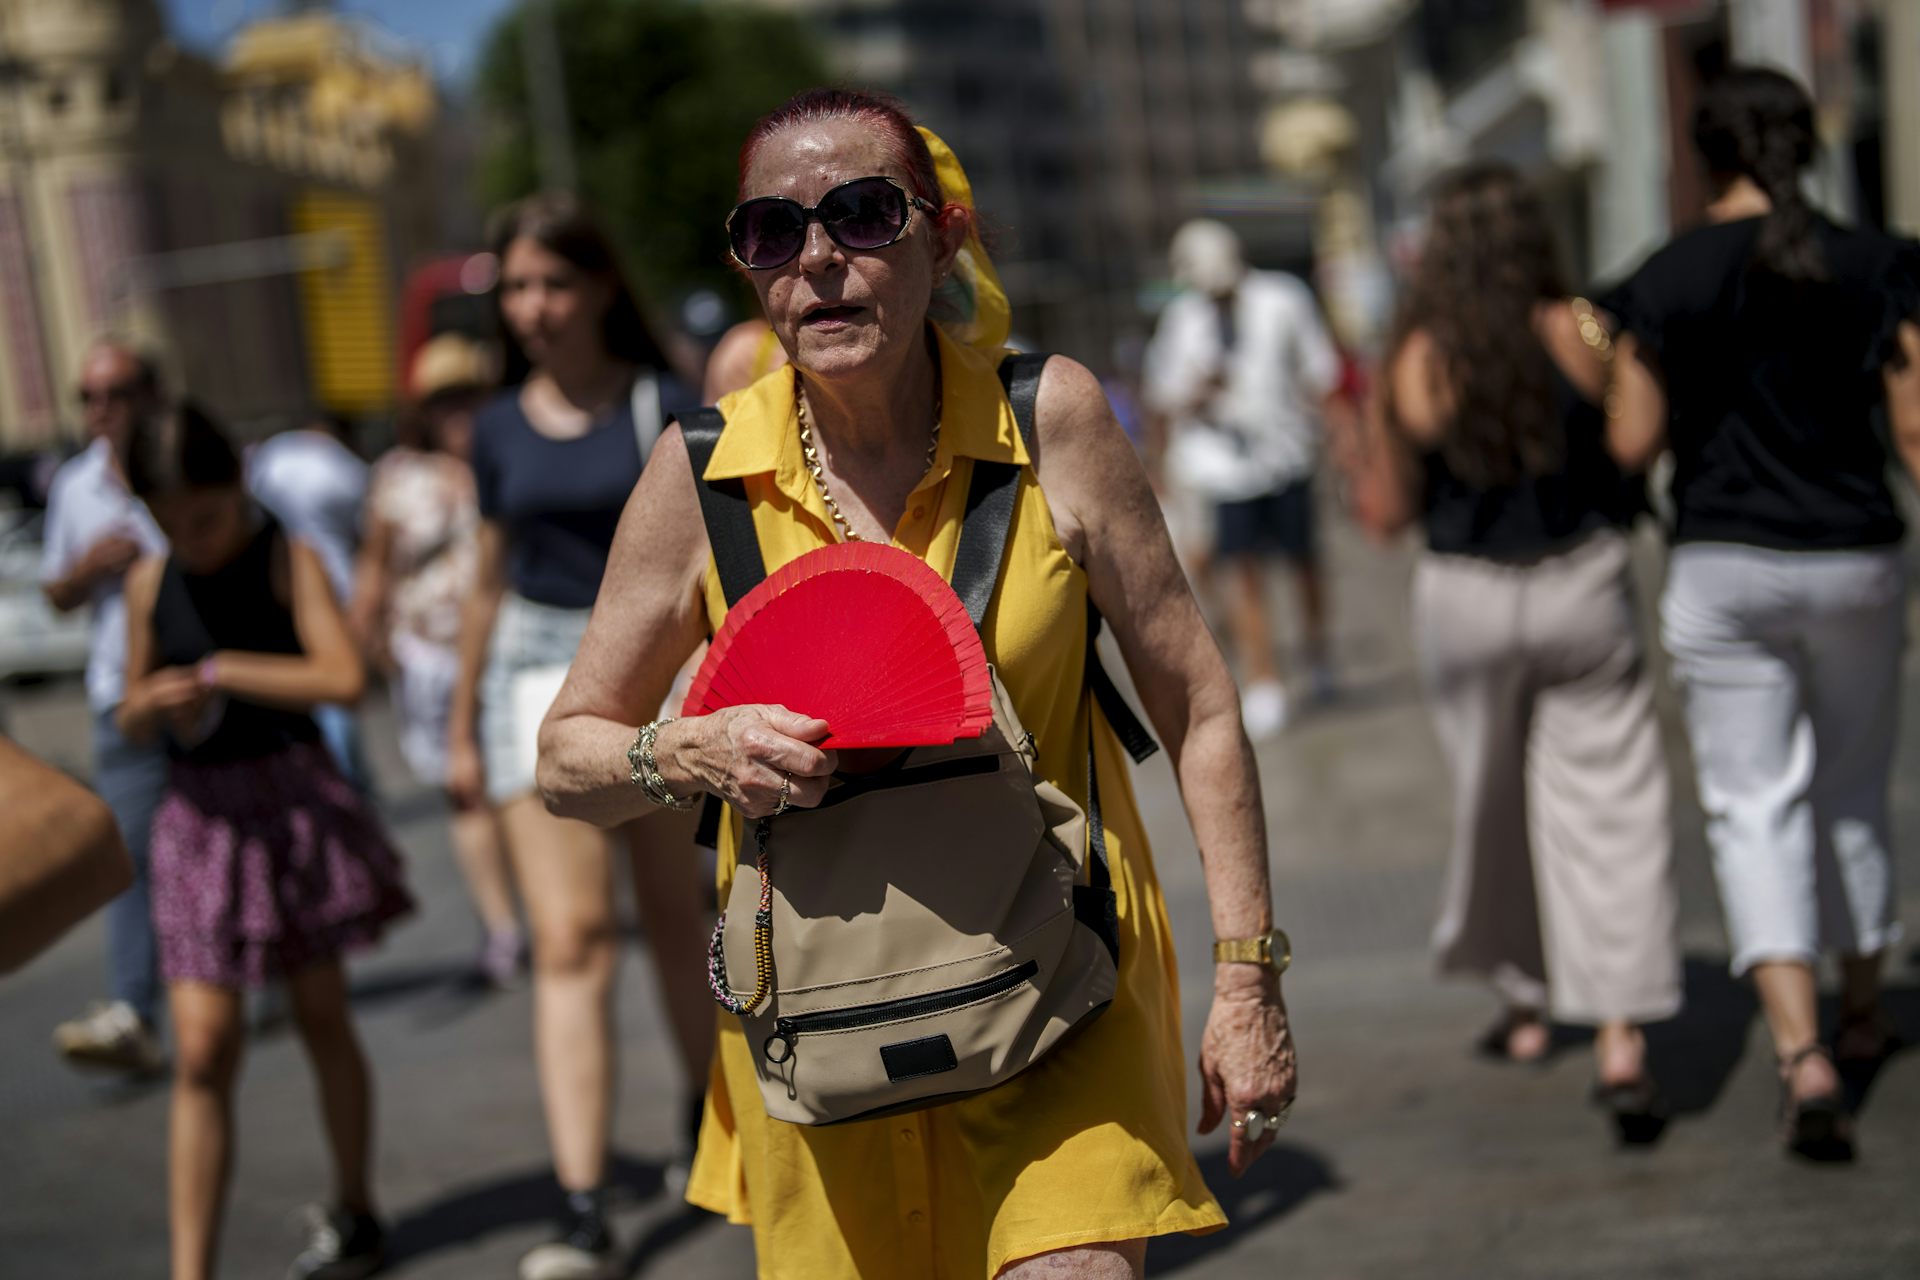 An older woman in Spain sweats as she waves a fan in the heat.